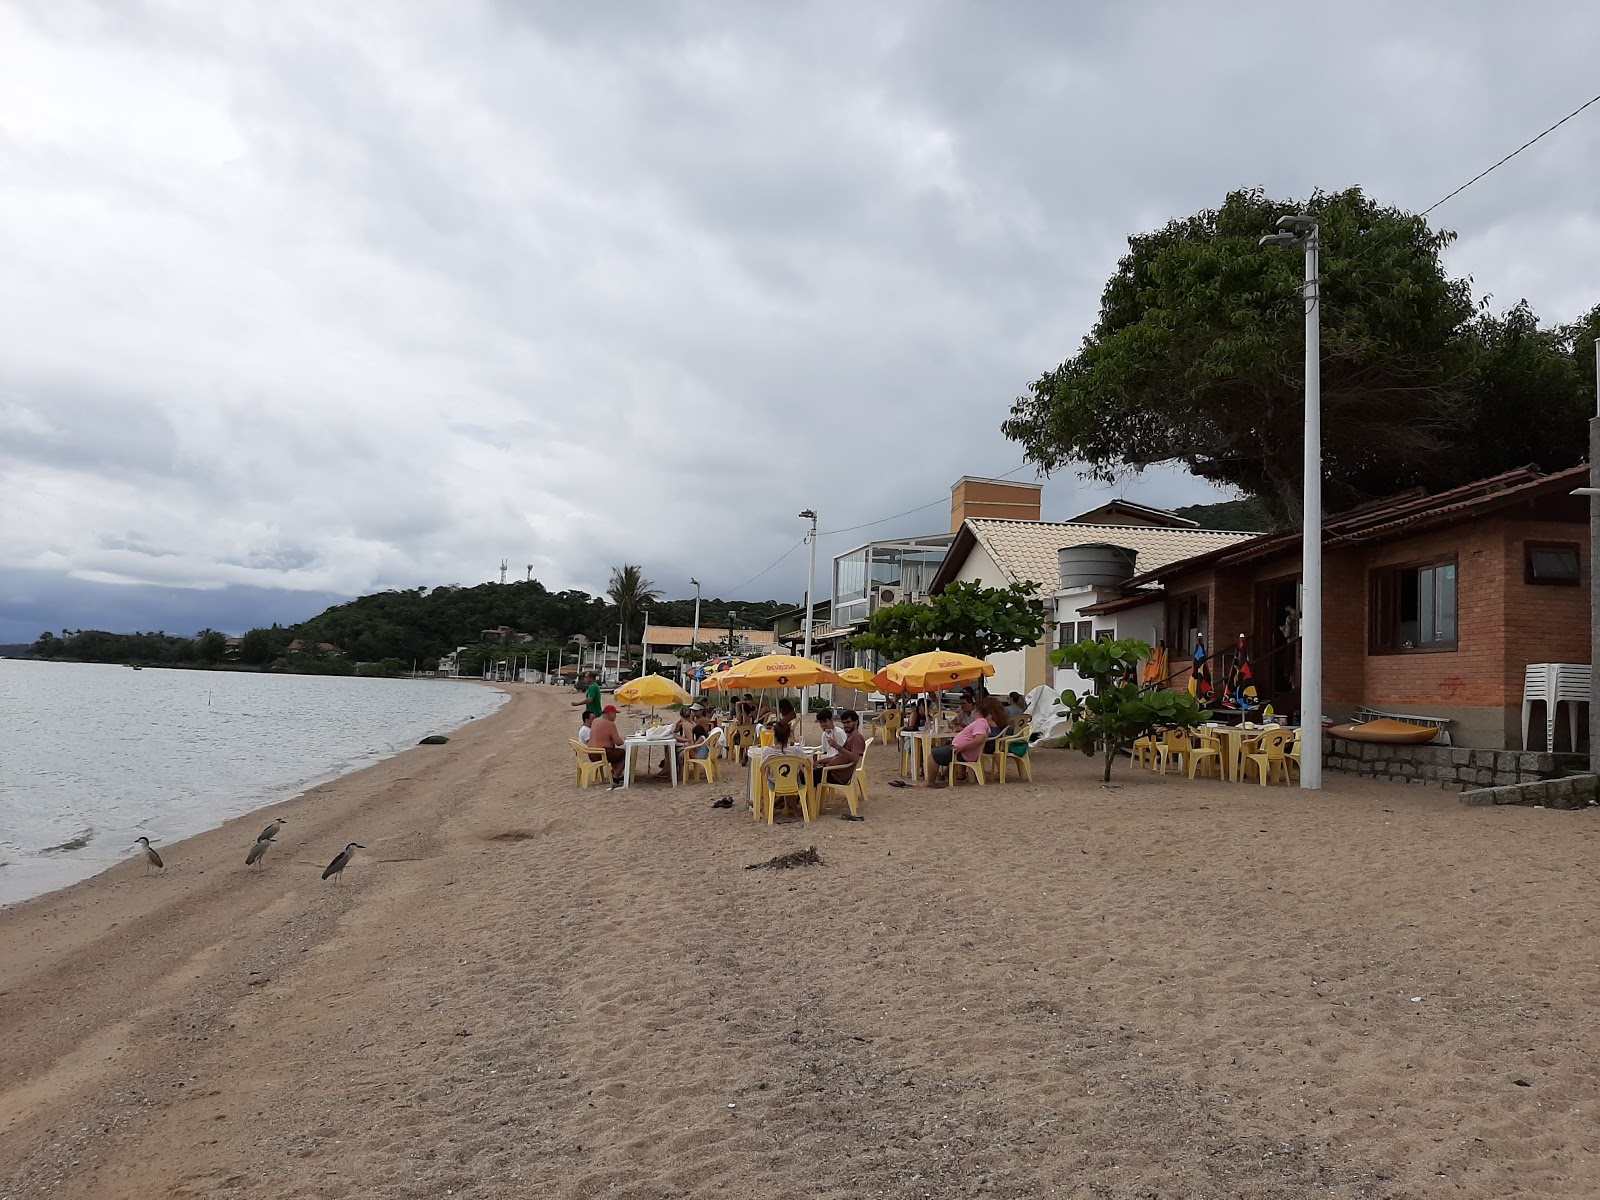 Sambaqui Plajı'in fotoğrafı geniş plaj ile birlikte